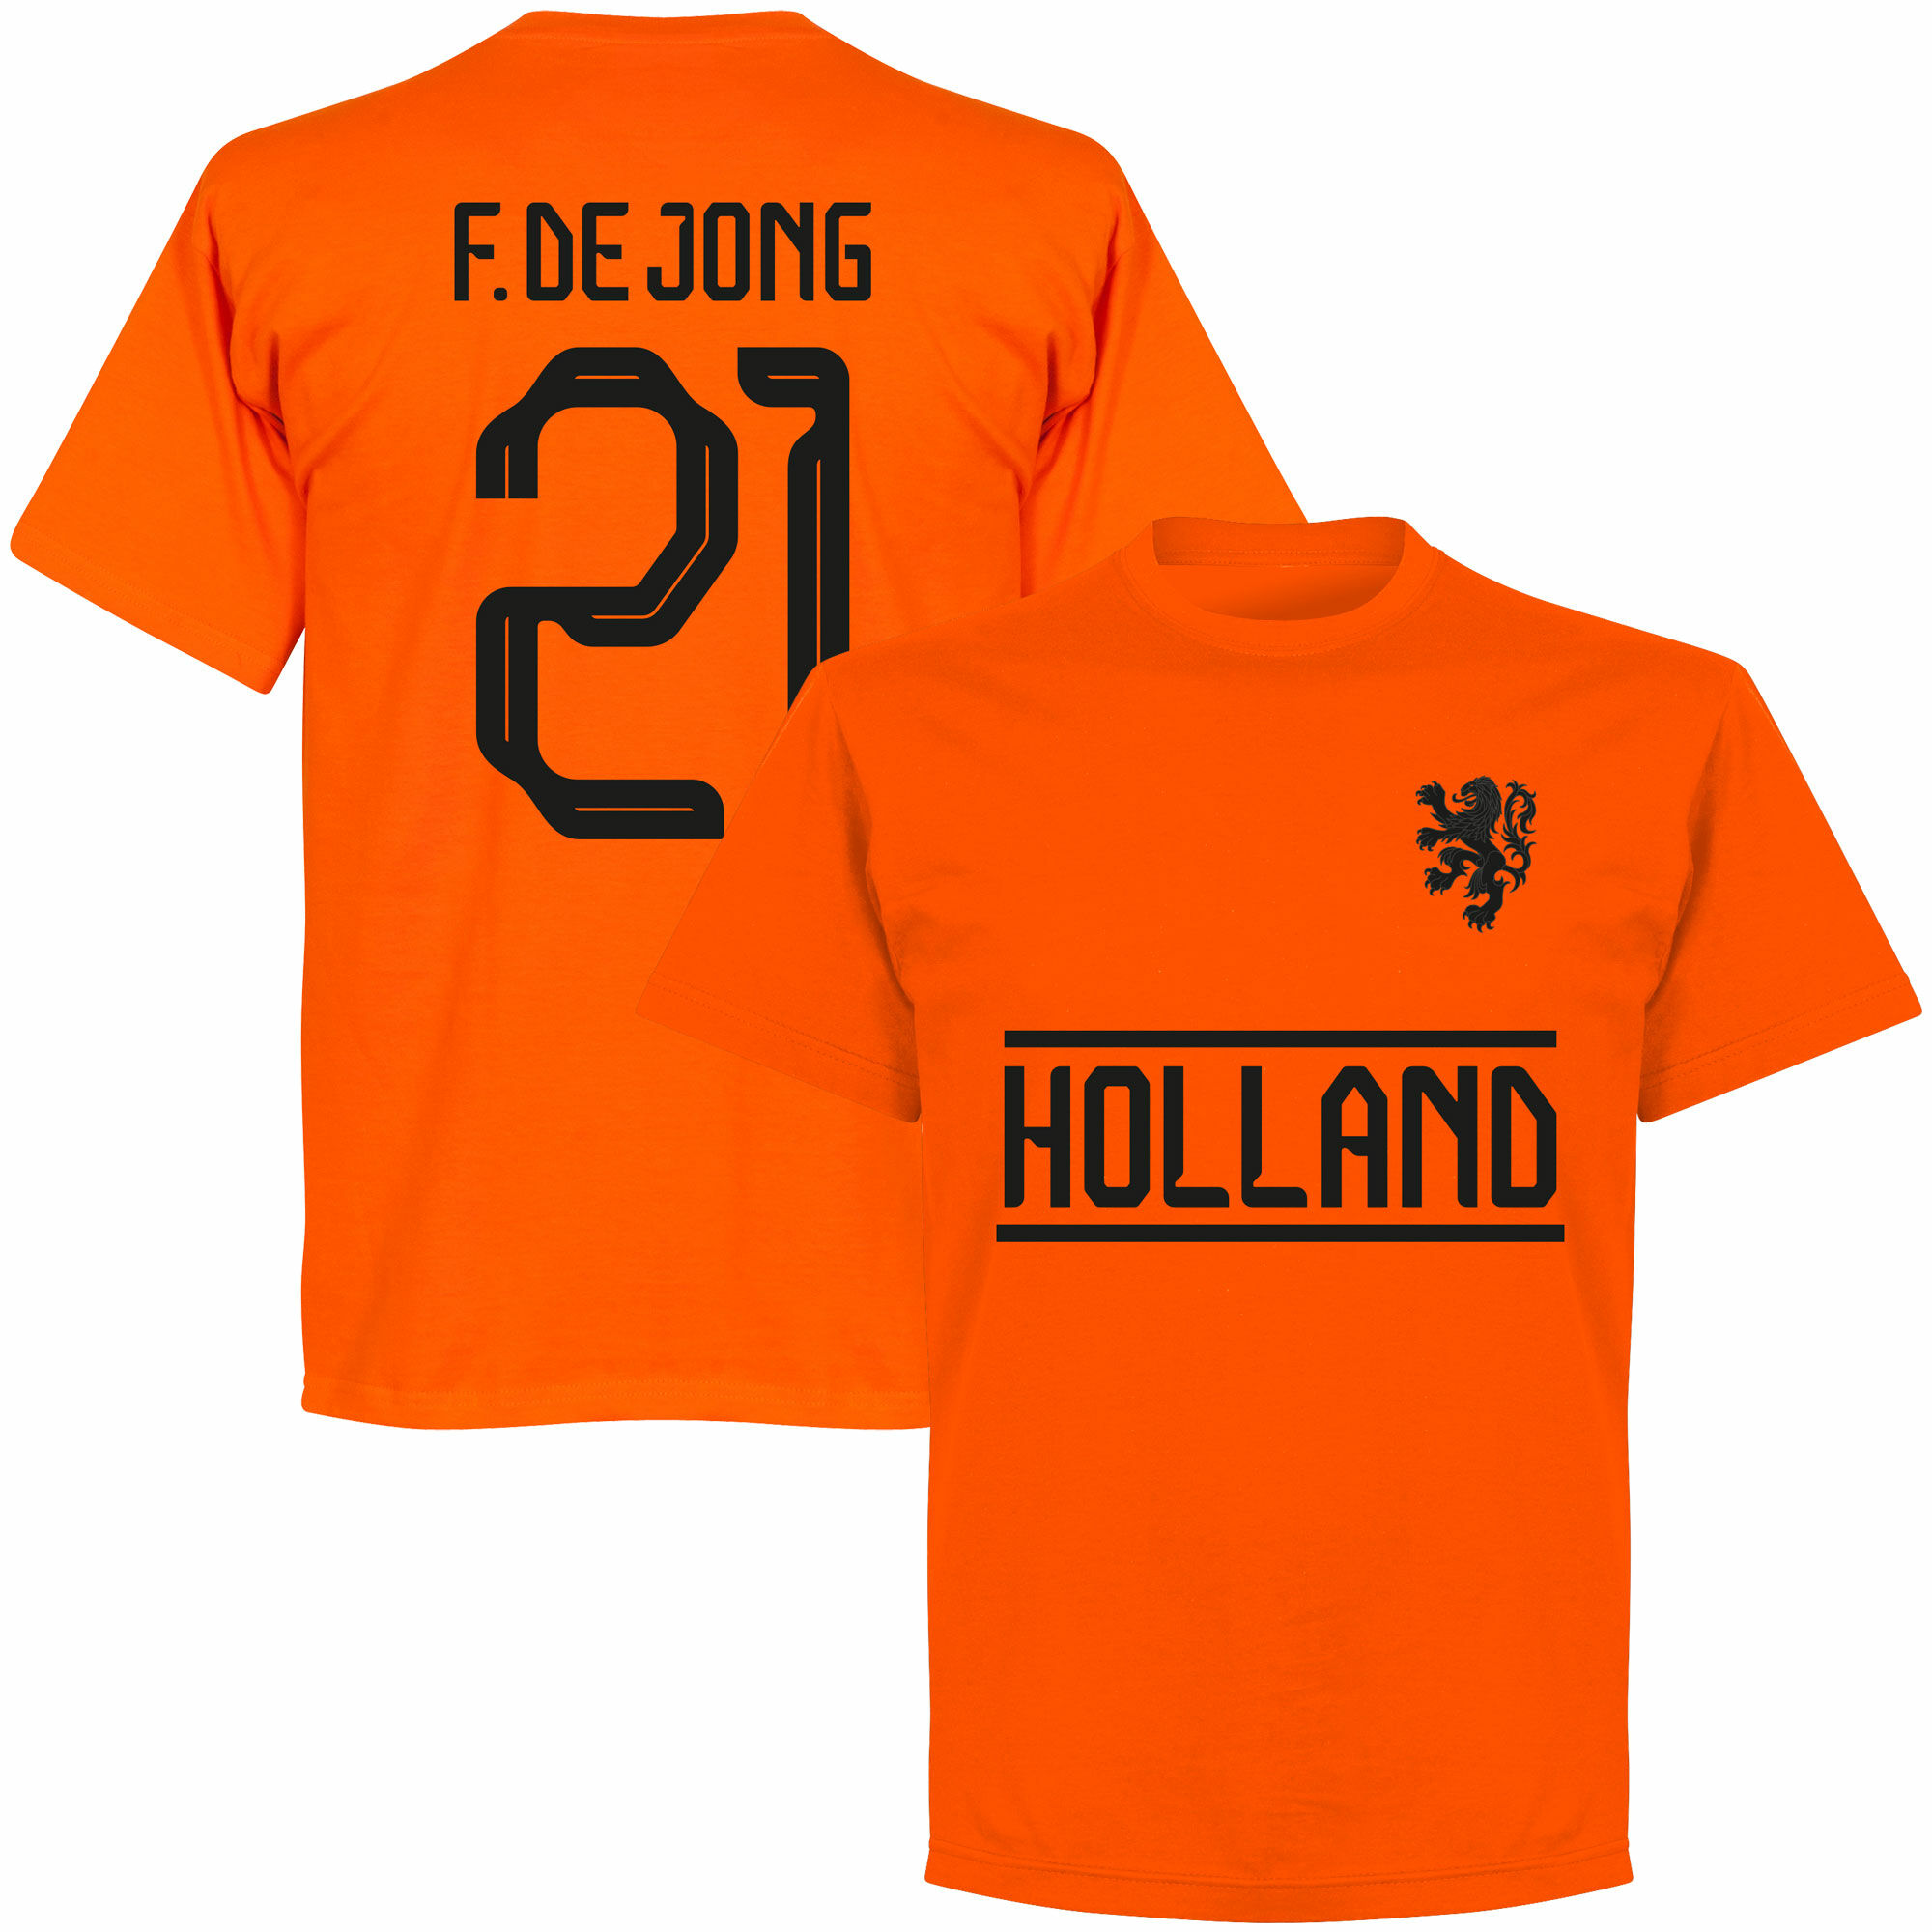 Nizozemí - Tričko - oranžové, číslo 21, Frenkie de Jong